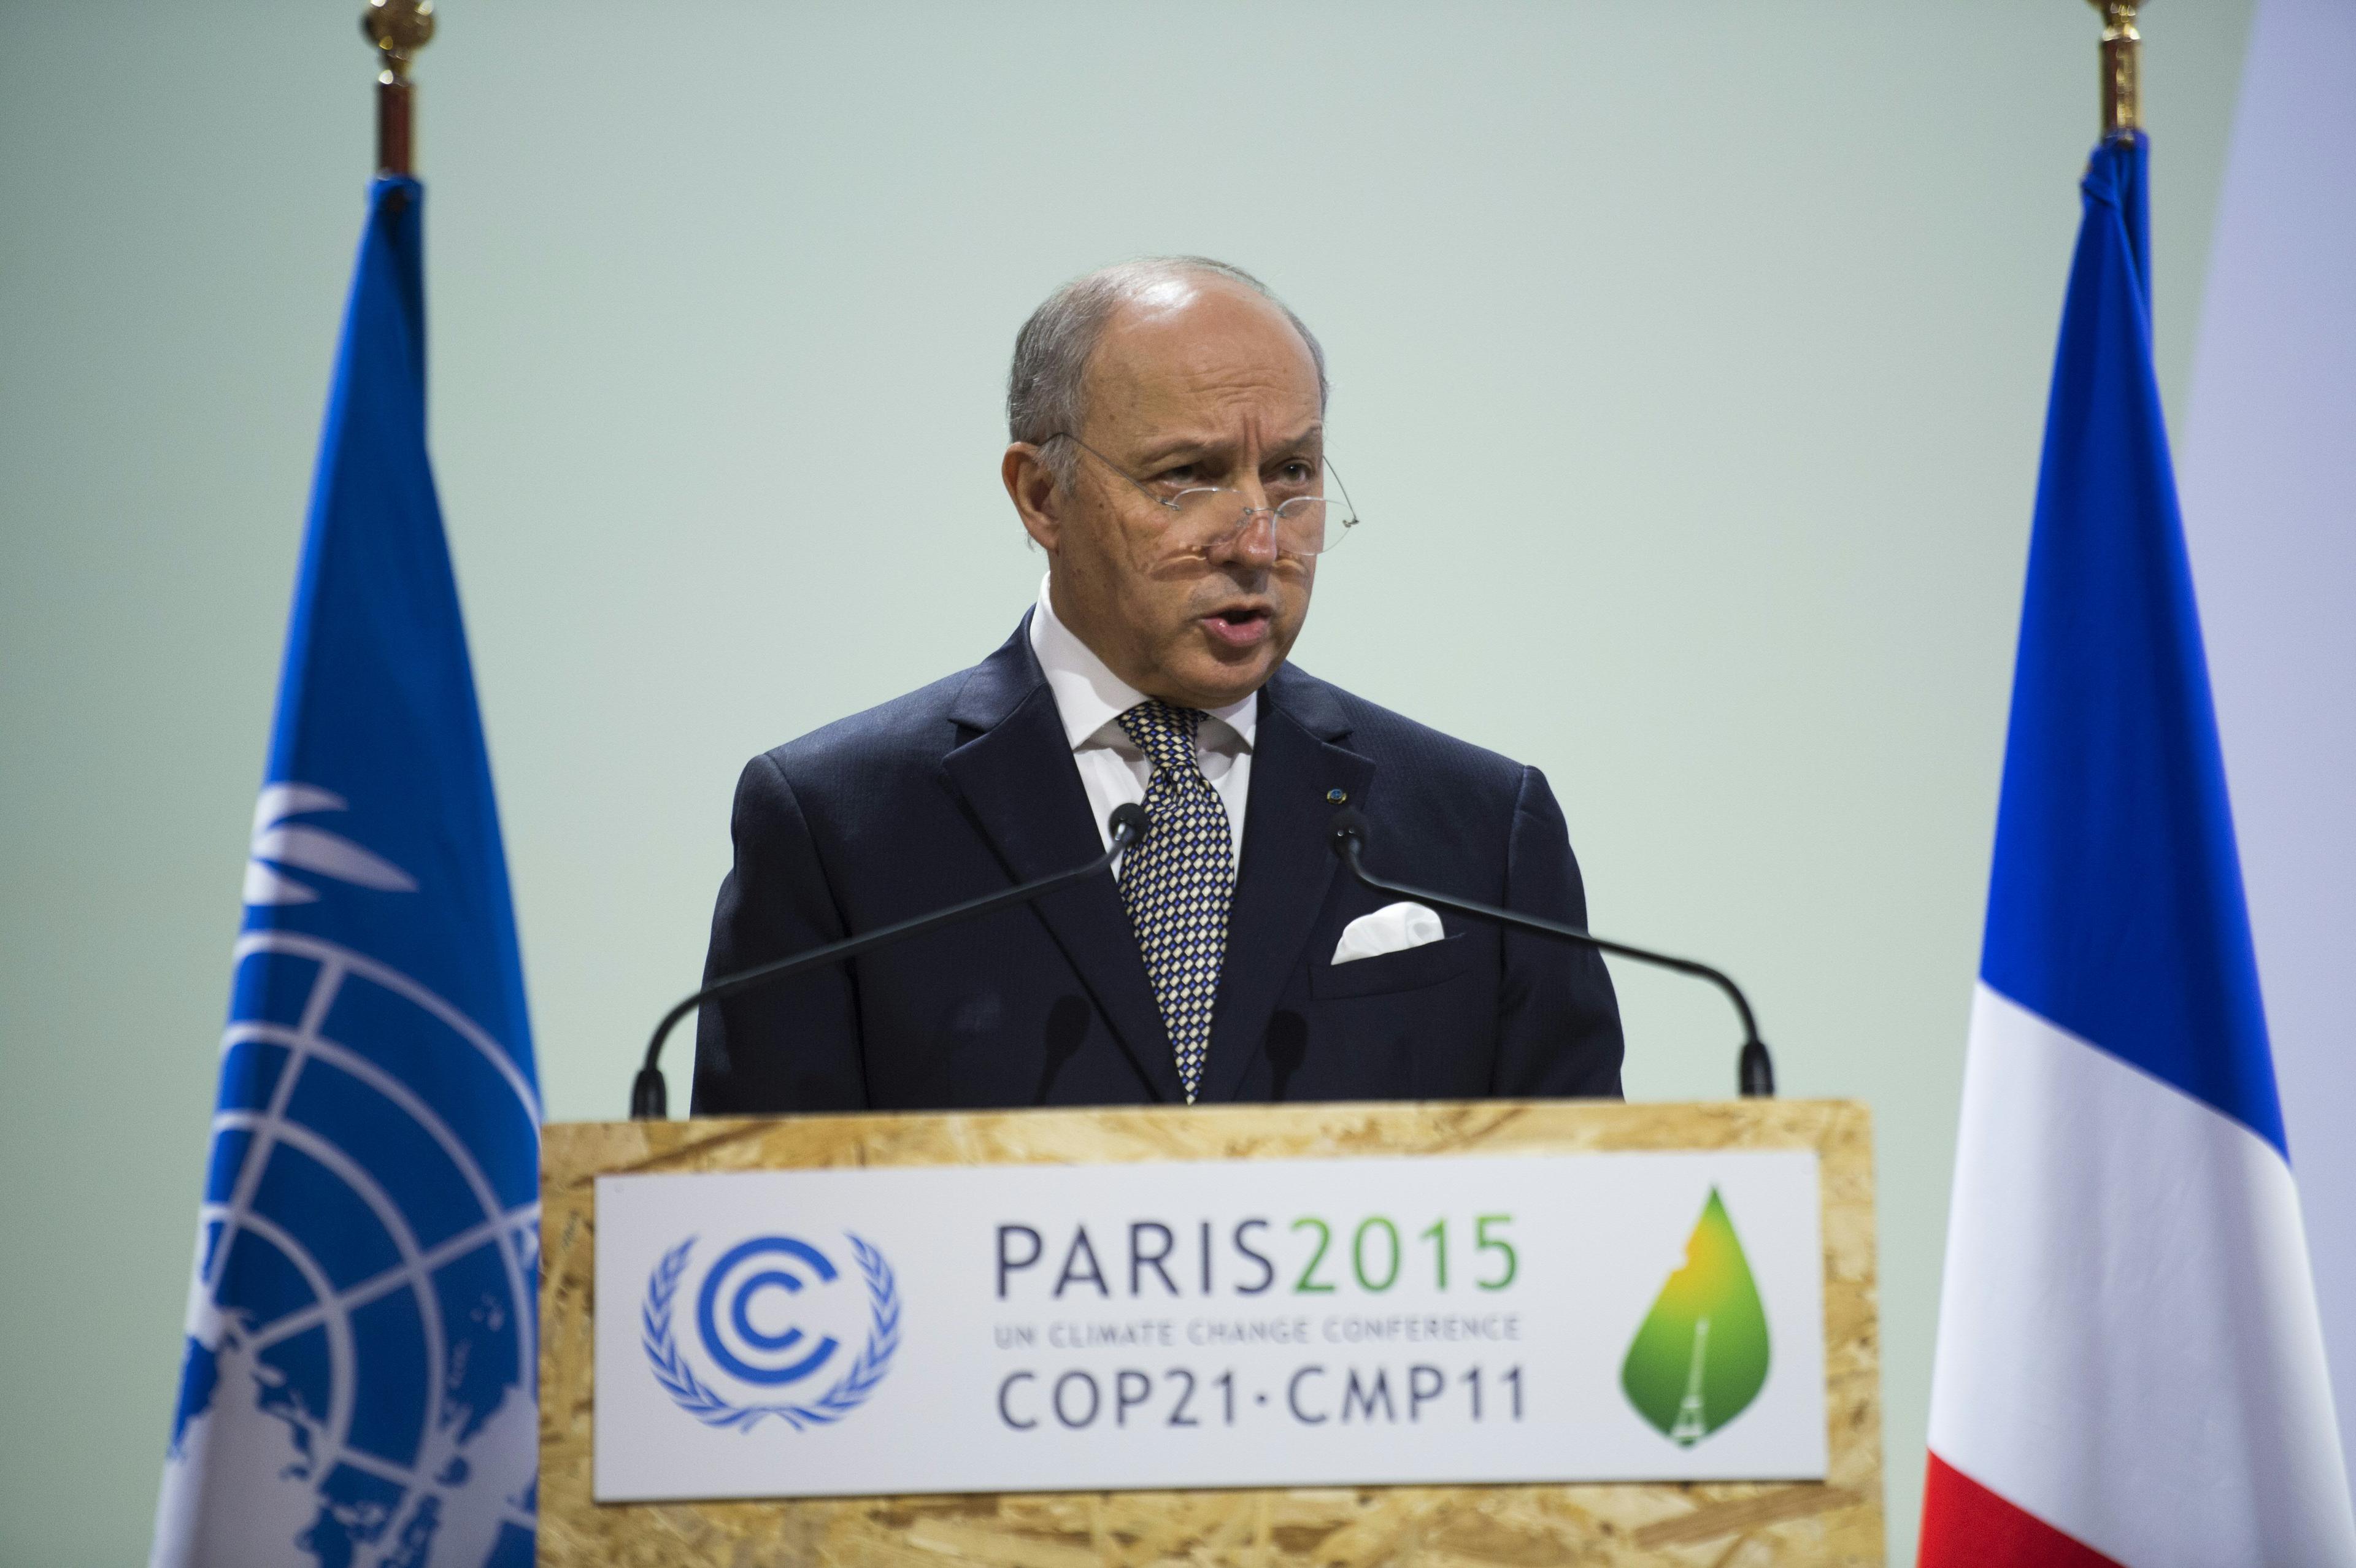 Laurent Fabius, Frankrikes utrikesminister och ordförande för COP21 i Paris, leder förhandlingarna framåt. (Foto: Martin Bureau /AFP/Getty Images) 